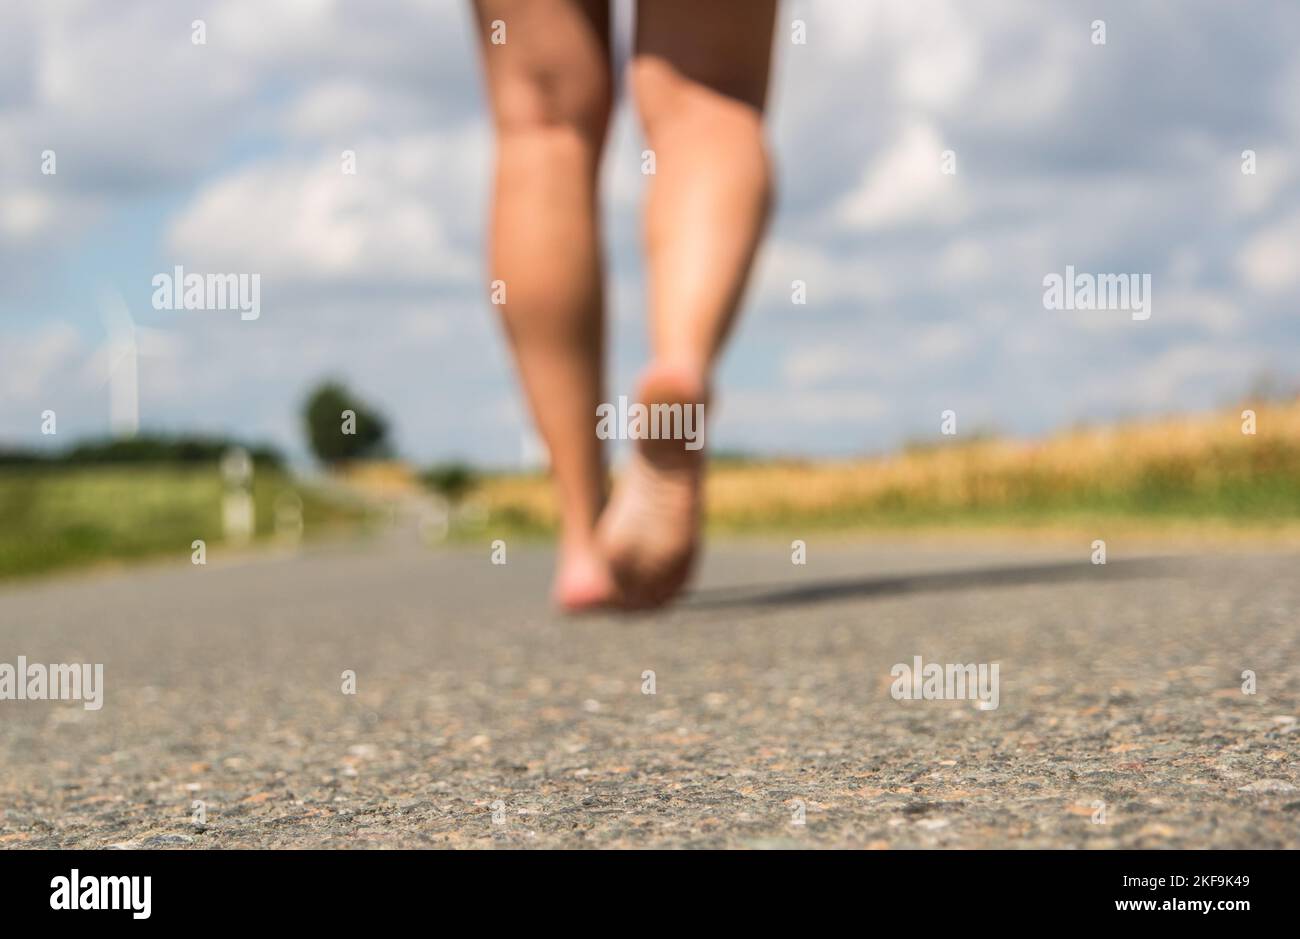 Junge Frau, die barfuß auf einer Straße läuft Stockfoto